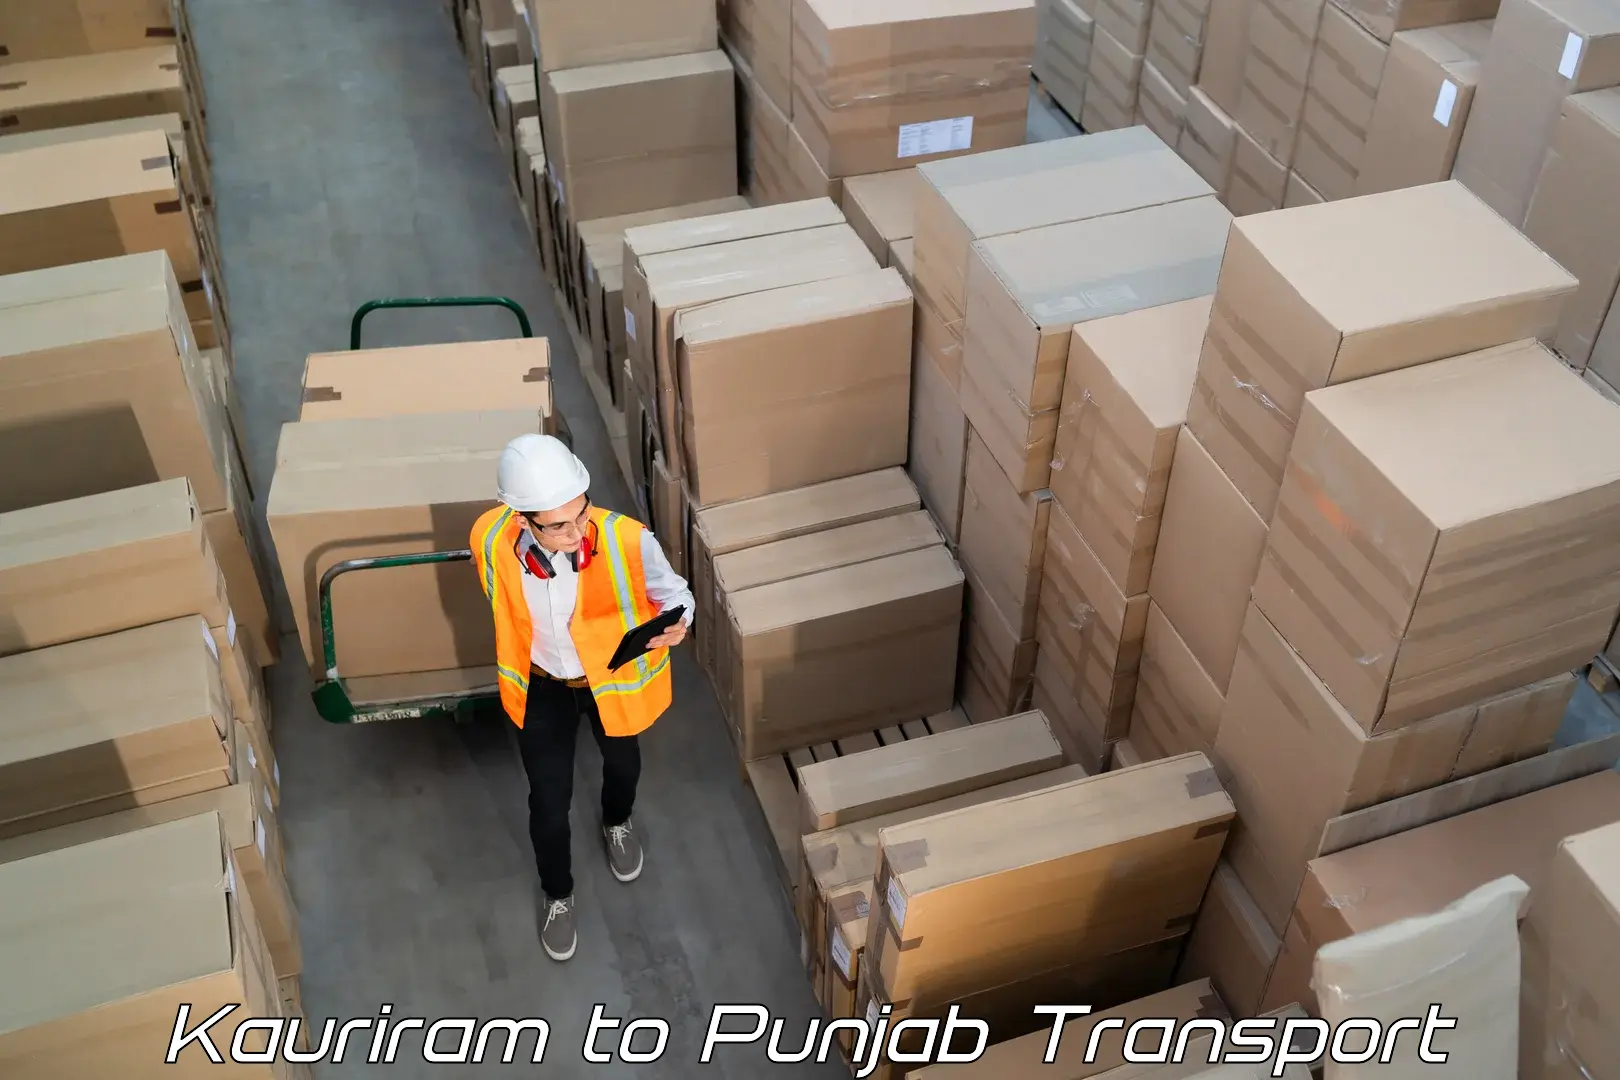 Cargo transport services Kauriram to Rupnagar